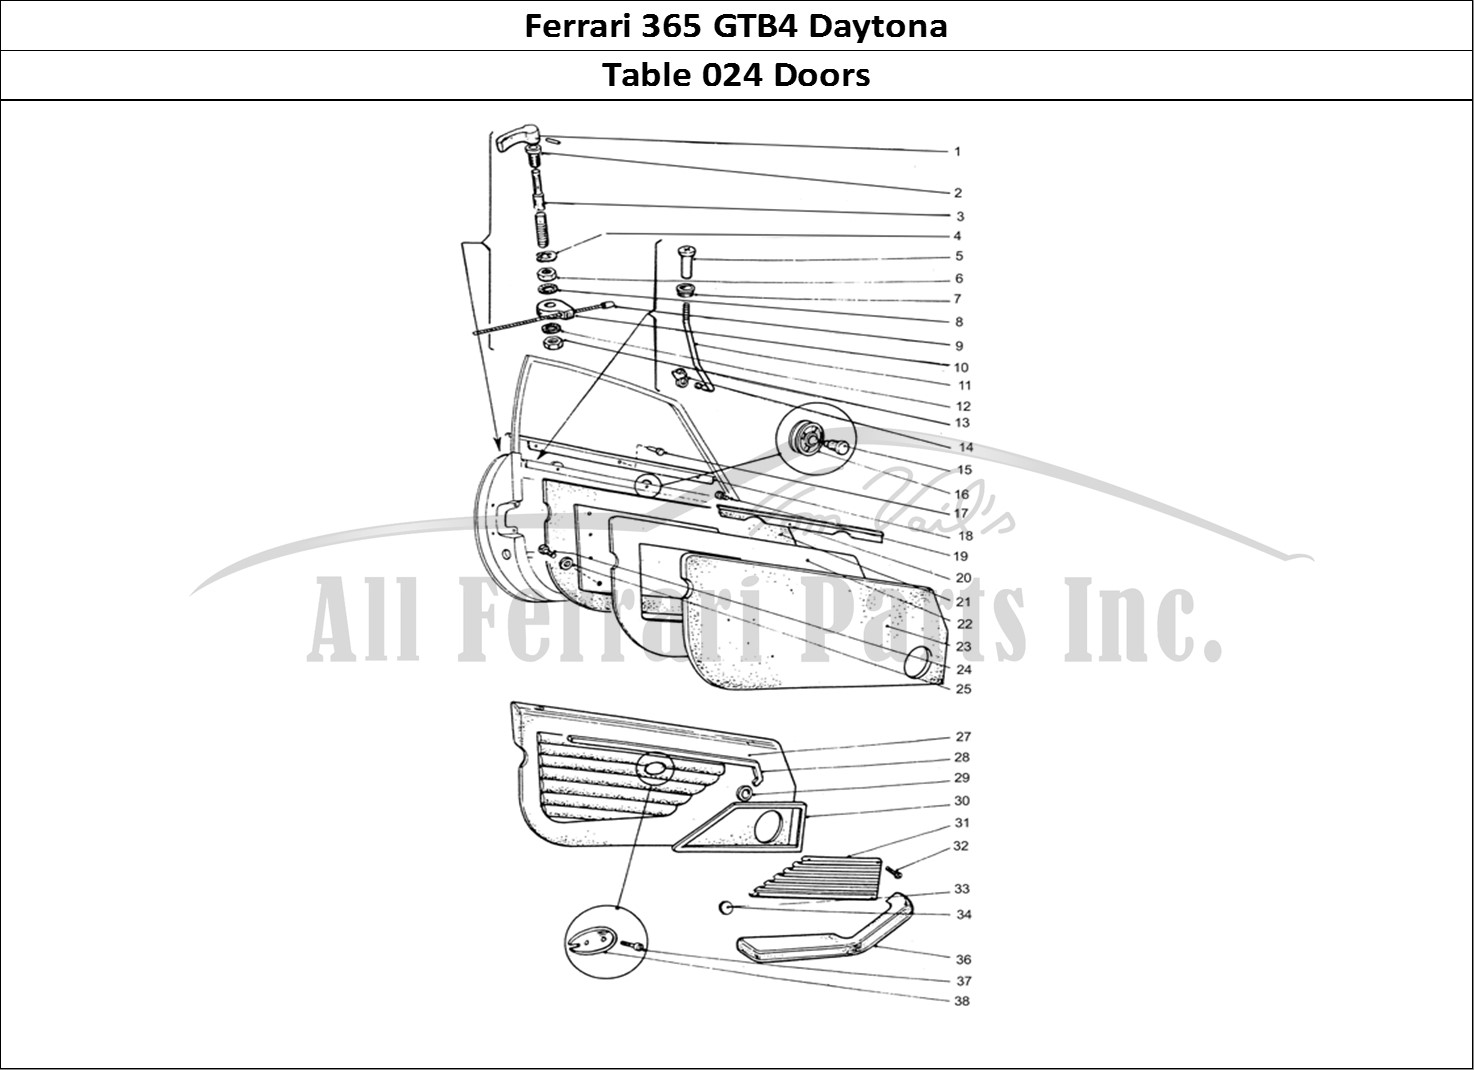 Ferrari Parts Ferrari 365 GTB4 Daytona (Coachwork) Page 024 Inner Door panels & outer